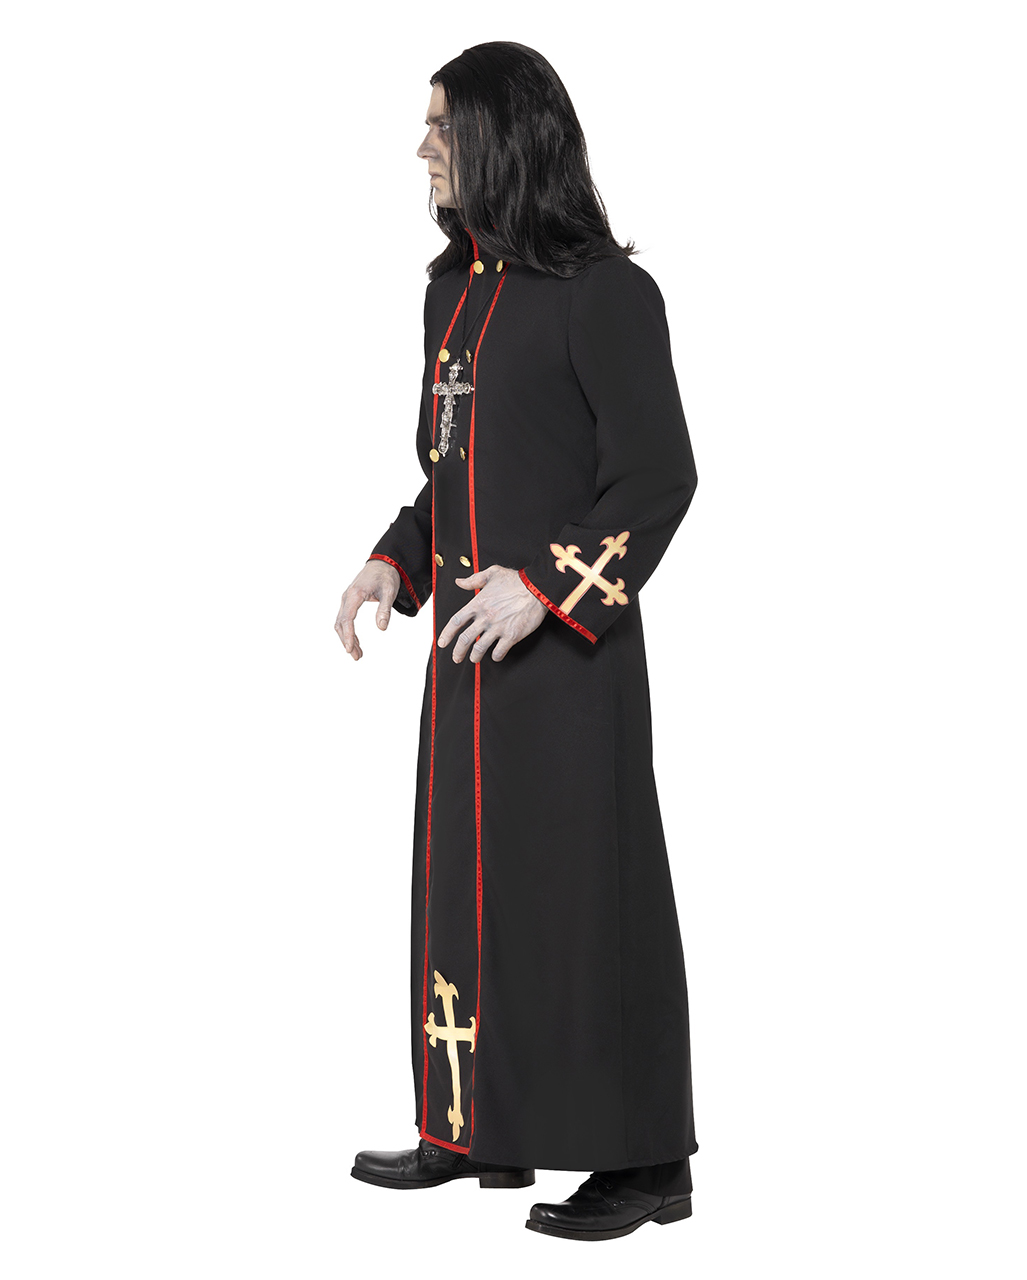 Kostüm Herren Zombie Priester Pfarrer Pastor Horror Fasching Karneval Halloween 